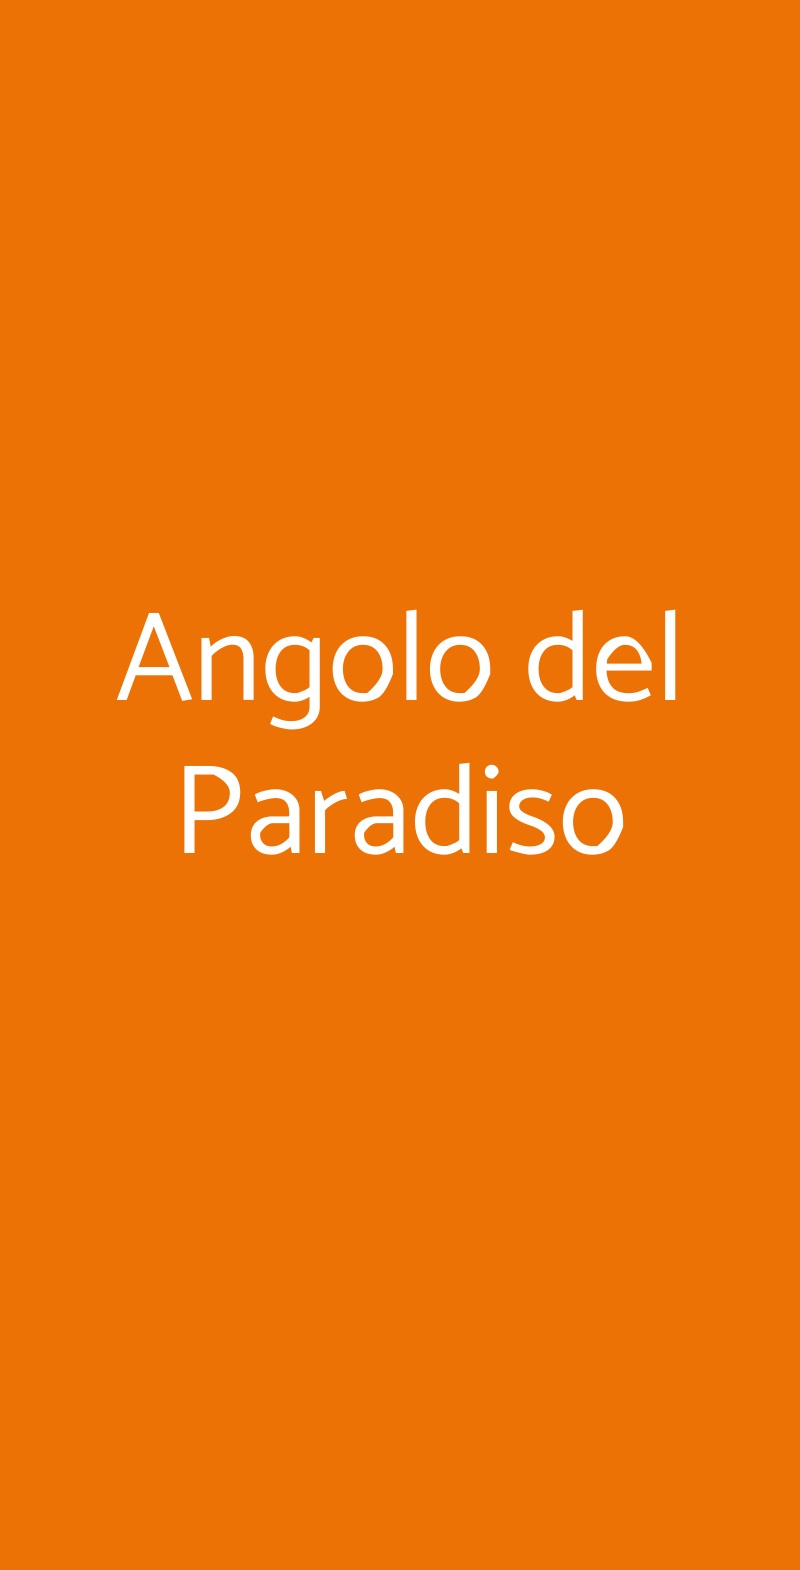 Angolo del Paradiso Napoli menù 1 pagina